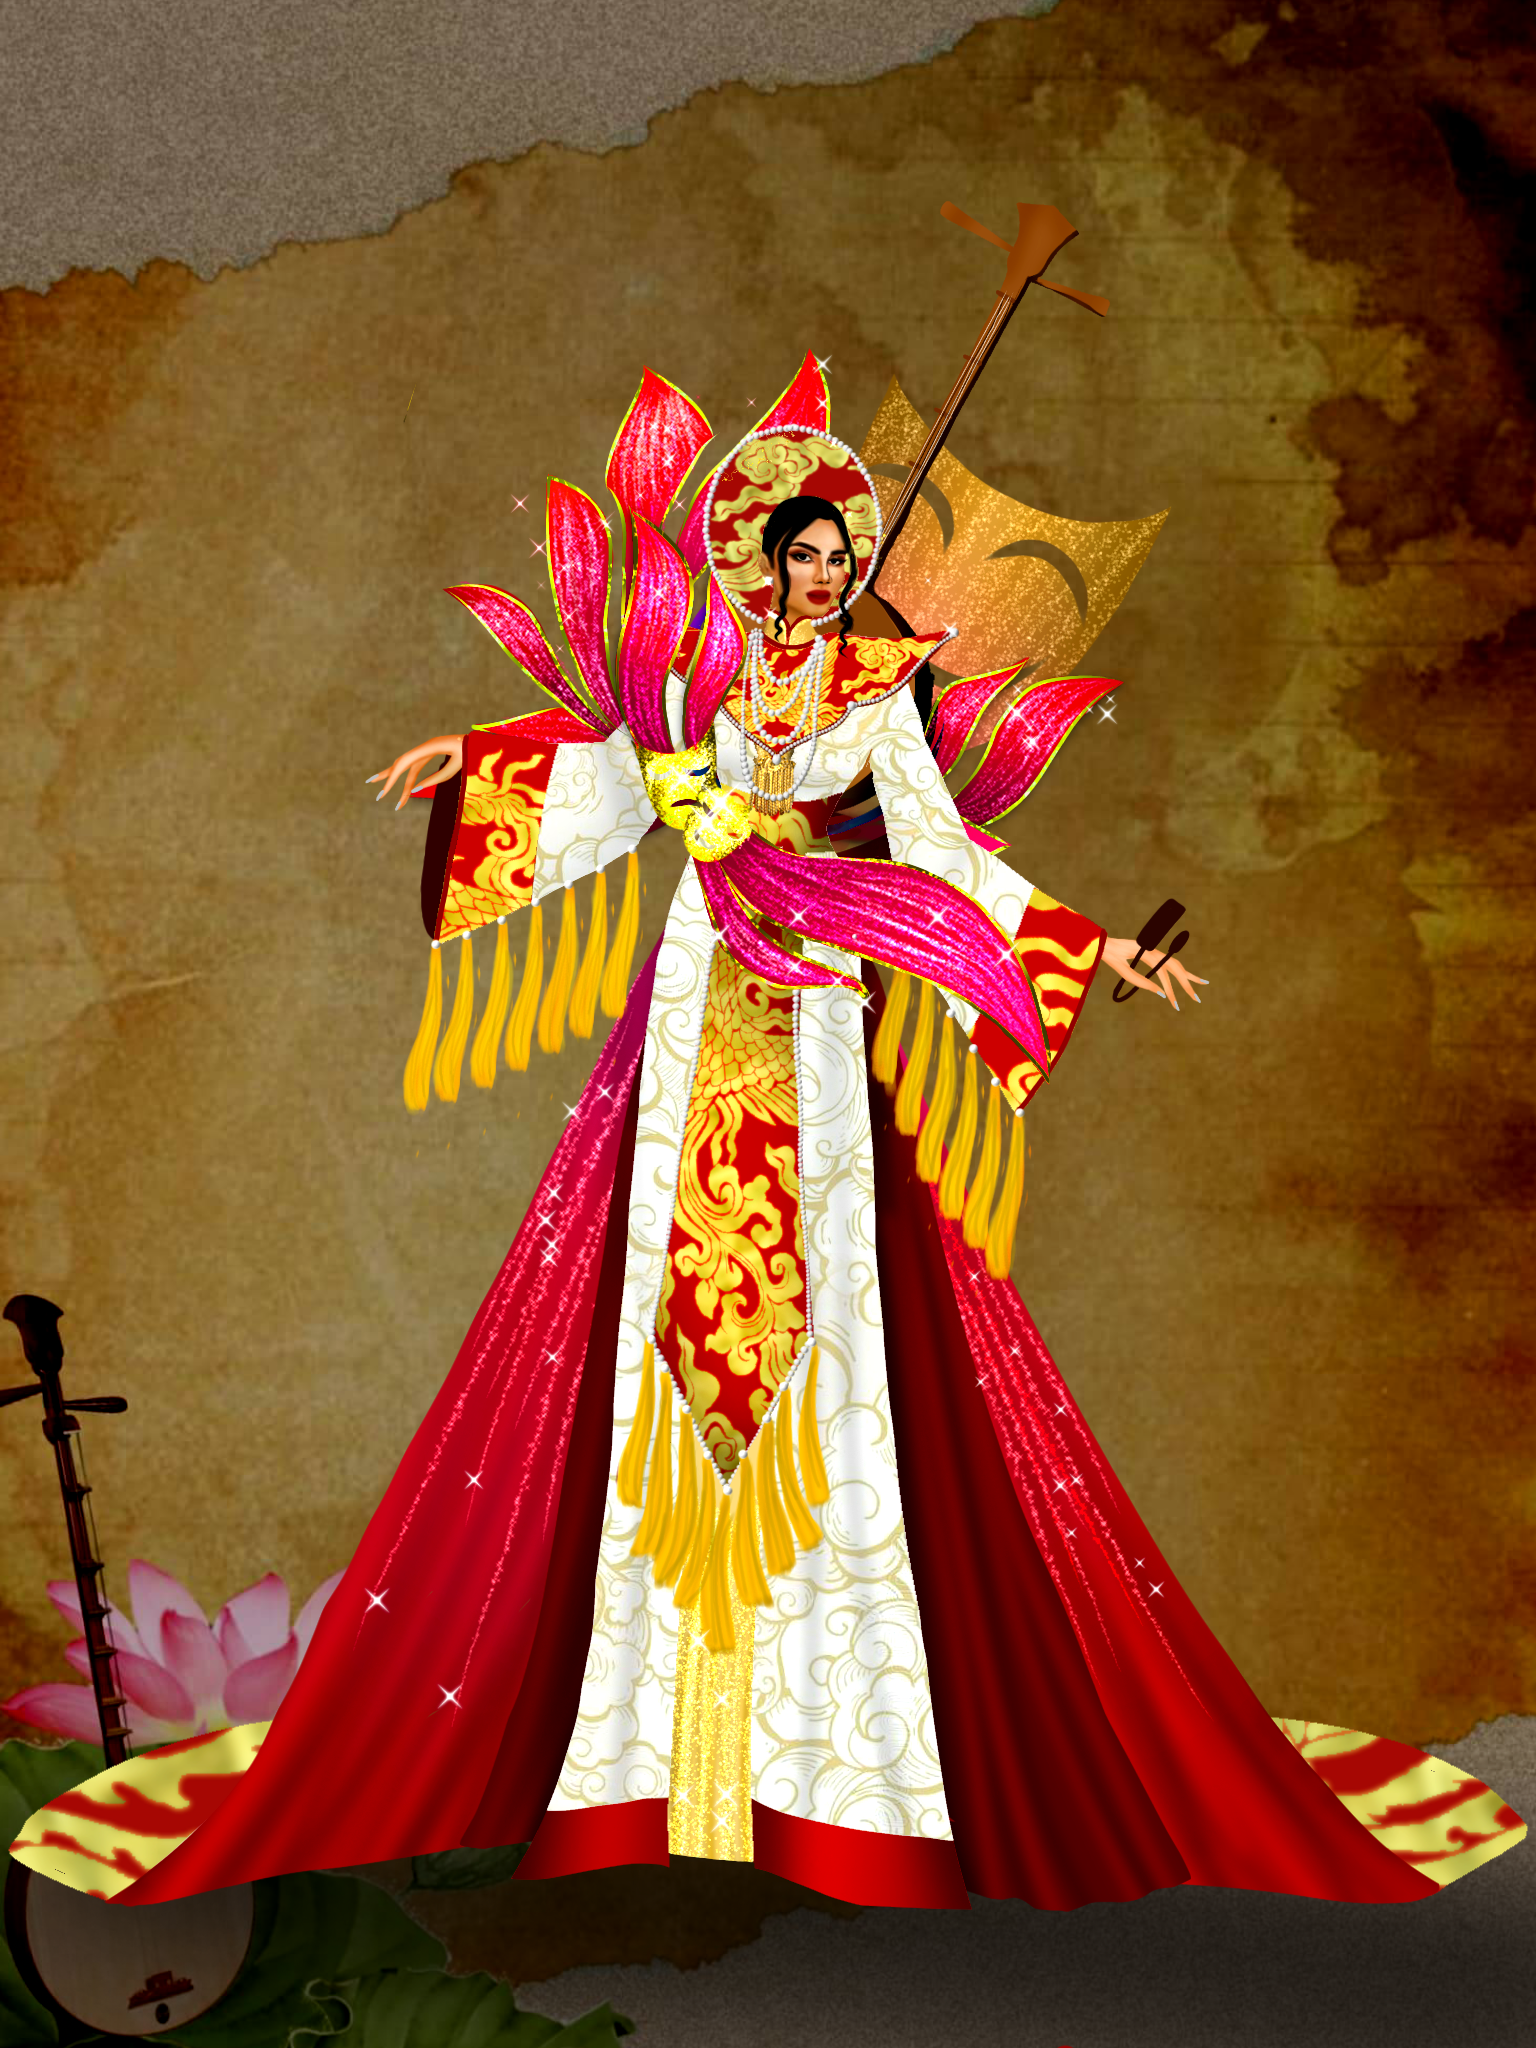 Thiết kế trang phục dân tộc mang lại sự độc đáo và quý giá của văn hoá Việt Nam. Hãy khám phá những thiết kế tinh tế và nổi bật này để hiểu thêm về văn hoá đa dạng của đất nước chúng ta.